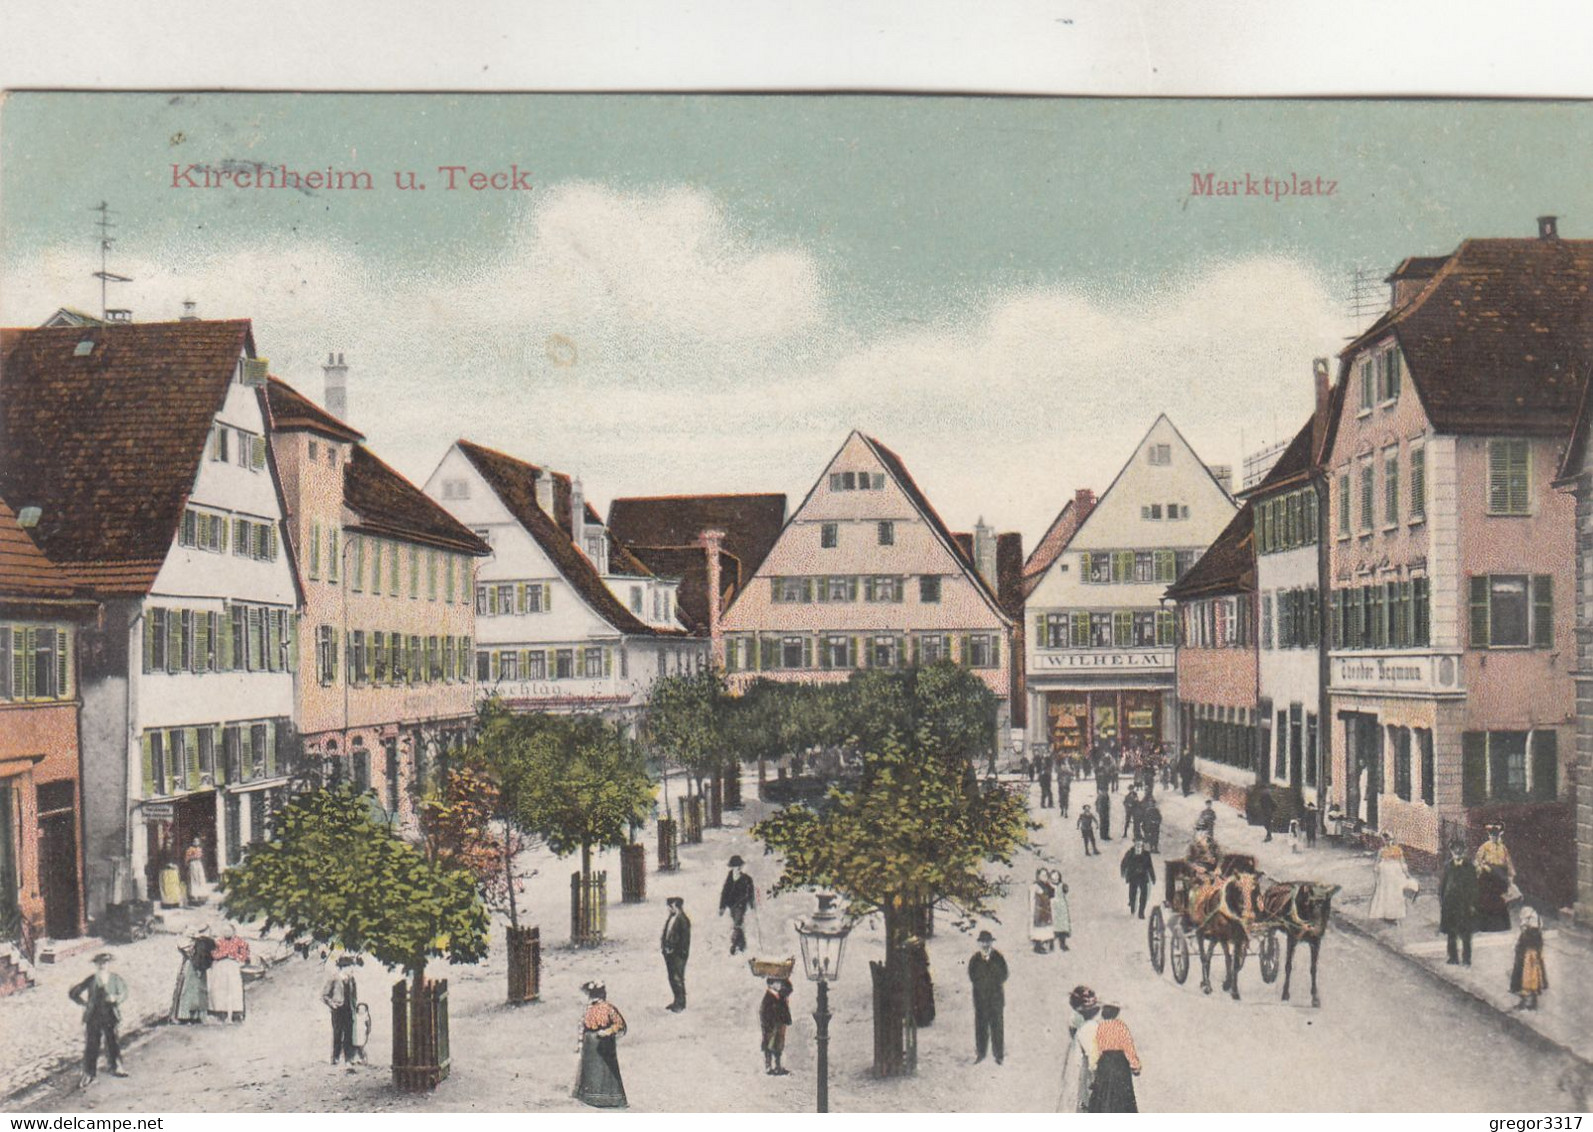 A5670) KIRCHHEIM U. TECK - MARKTPLATZ - Kutsche U. Sehr Belebte Alte Ansicht OTP !! 1909 - Kirchheim